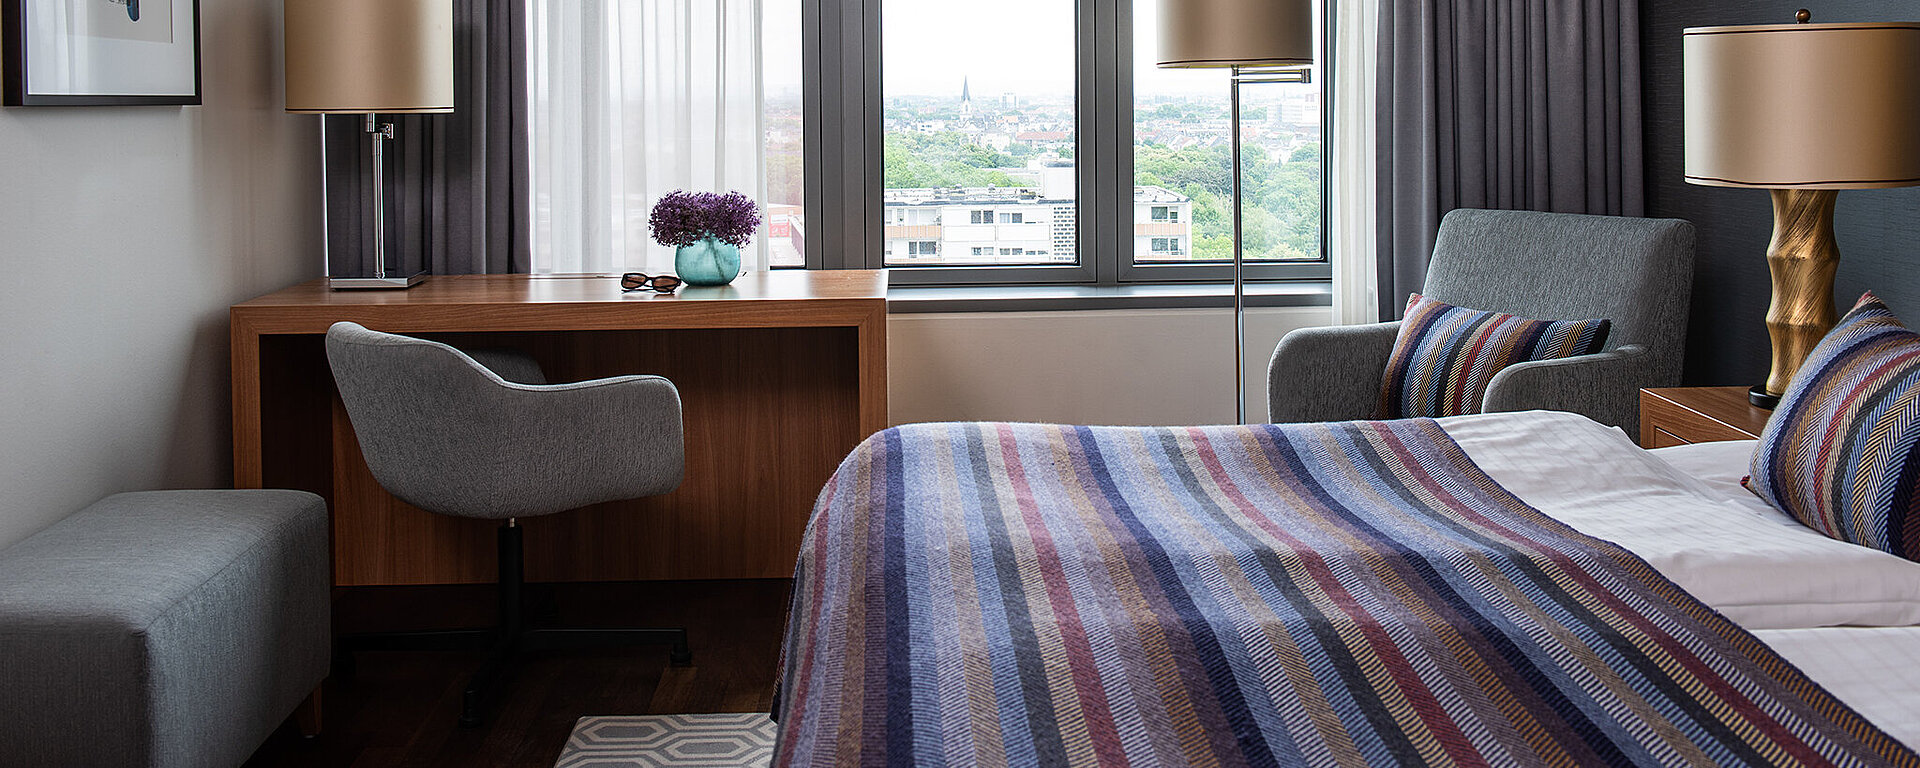 AMERON Köln Hotel Regent Standard Zimmer mit Bett und Schreibtisch